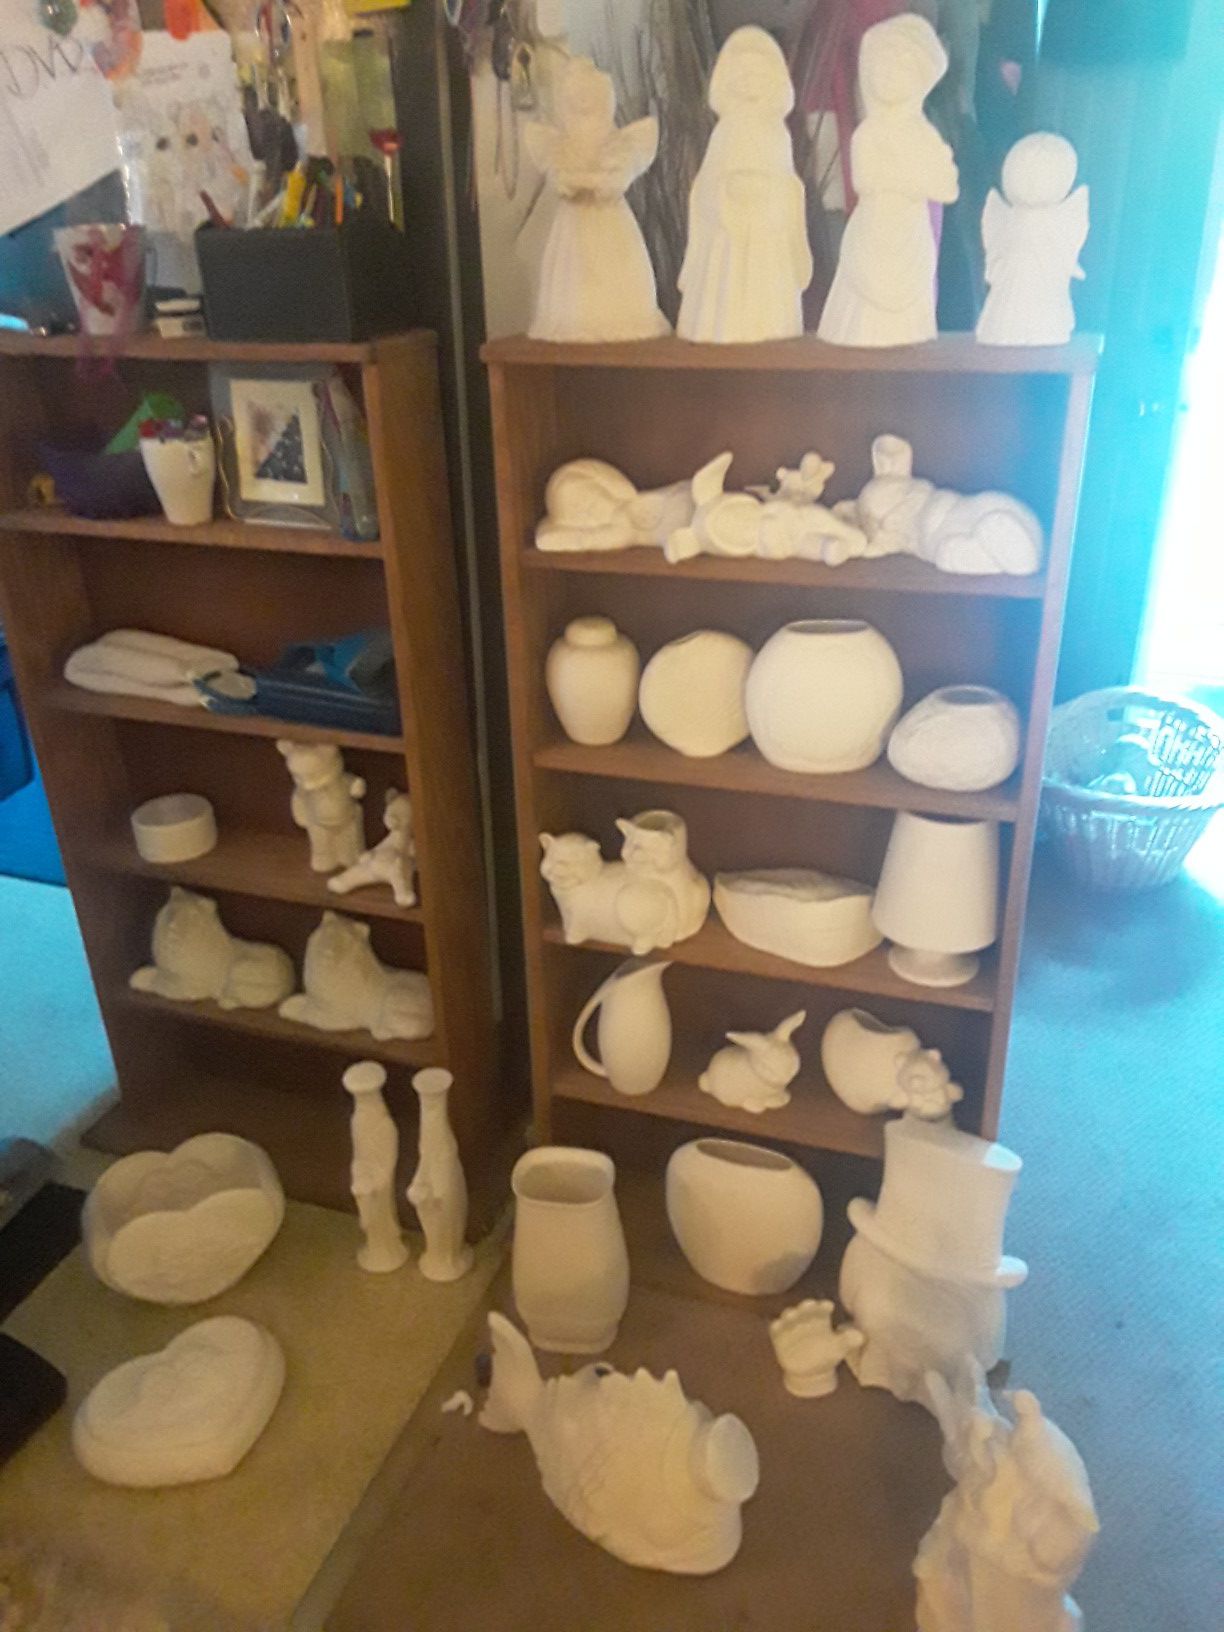 Lots of ceramic pieces